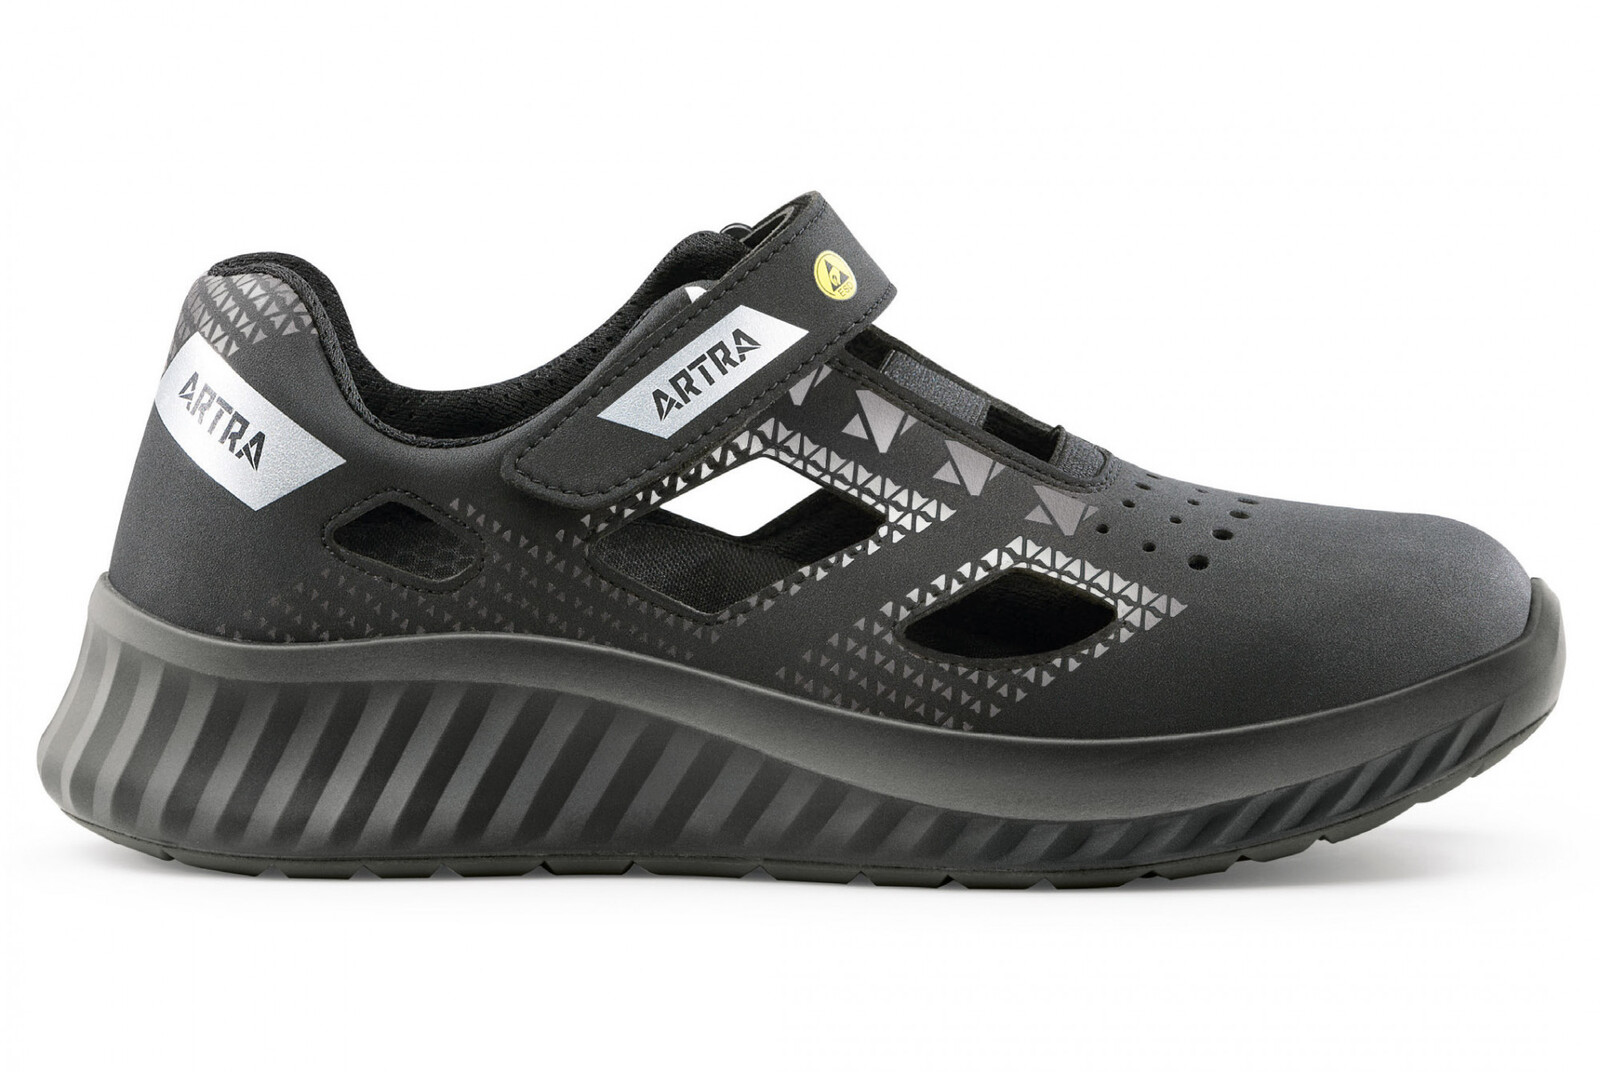 Bezpečnostné sandále Artra Arso 701 616560 S1 SRC ESD - veľkosť: 37, farba: čierna/sivá